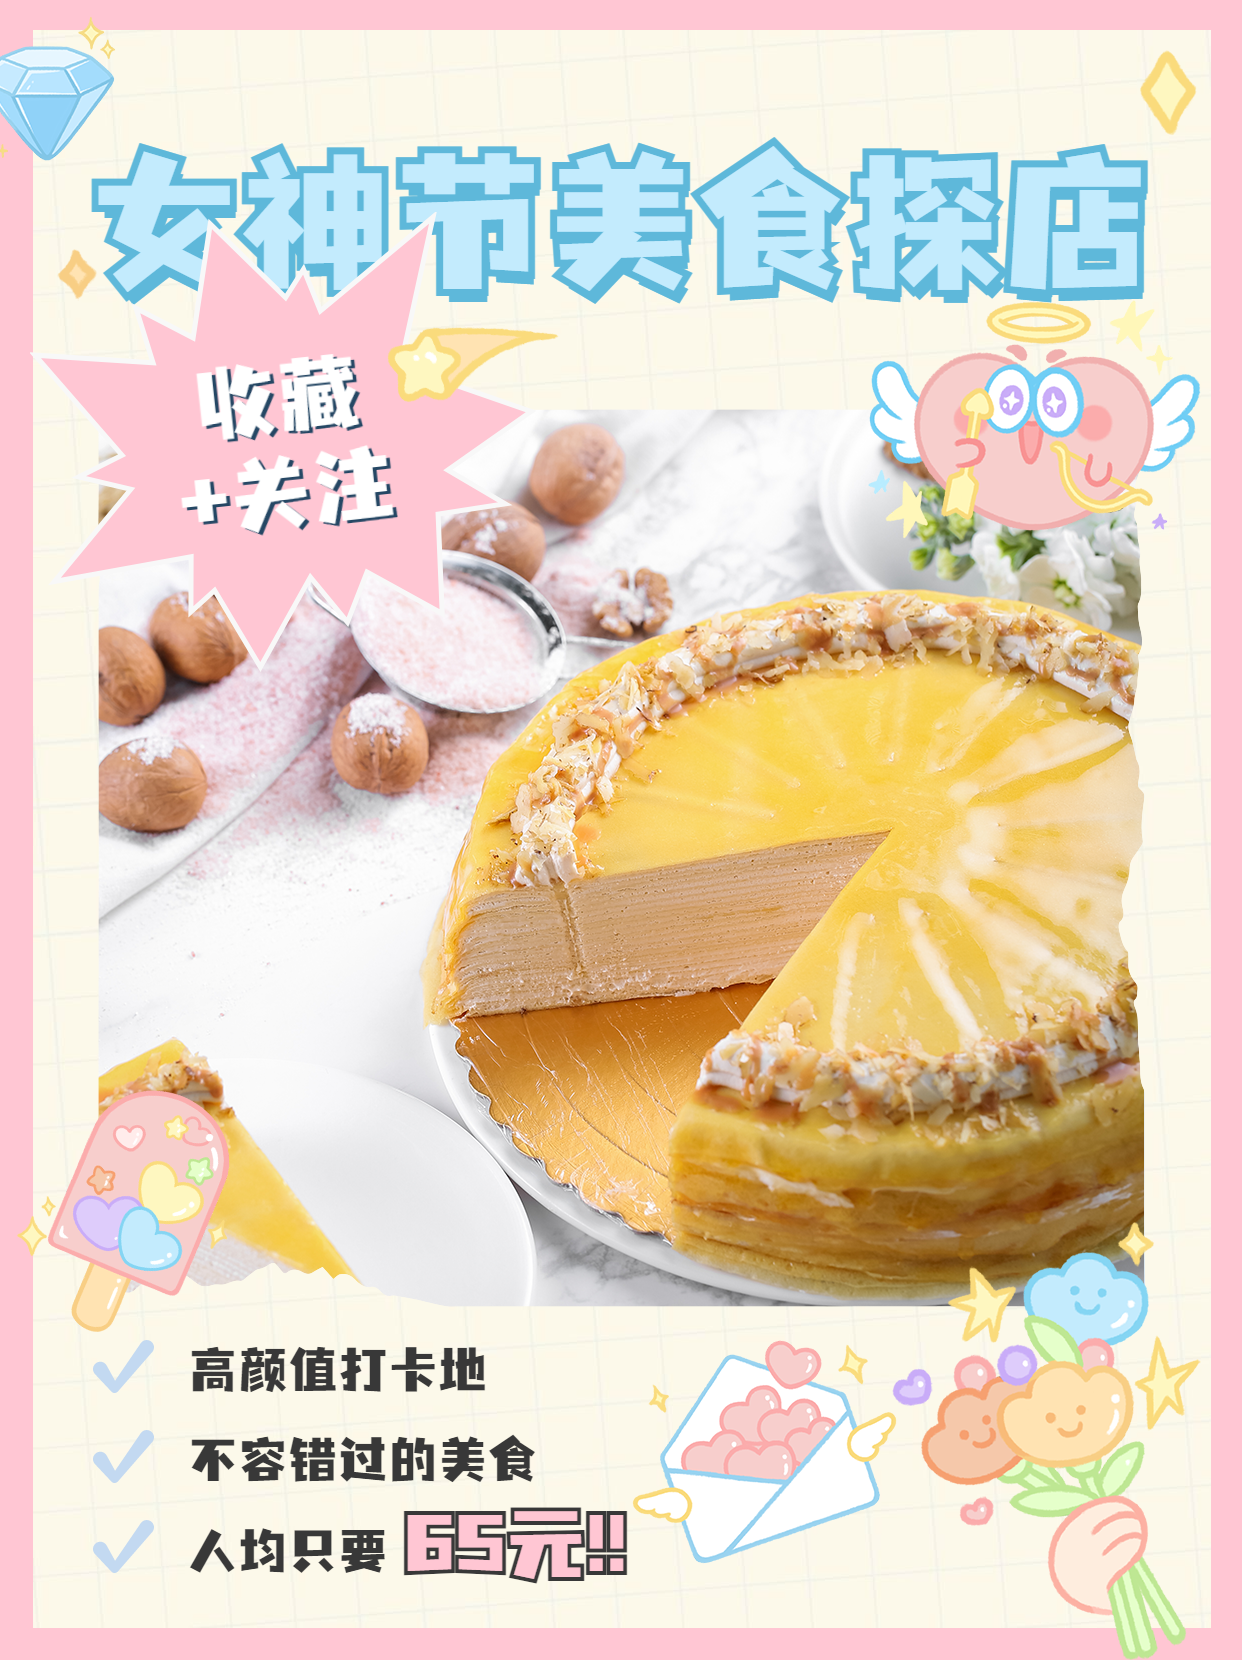 女神节烘焙甜品产品展示实景海报